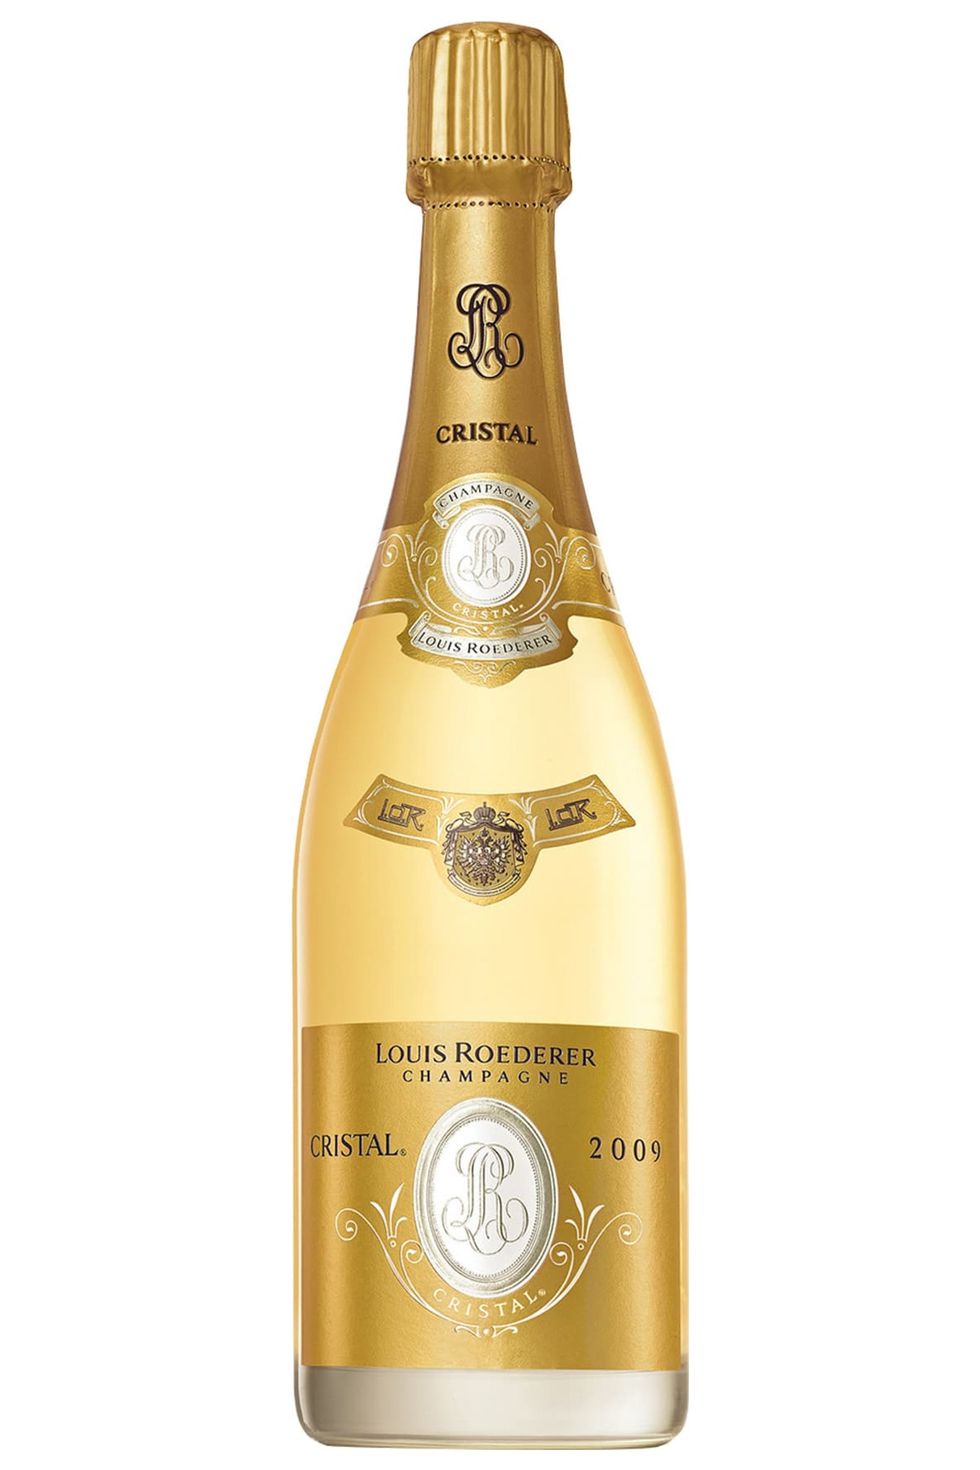 Louis Roederer "Cristal" Brut Champagne